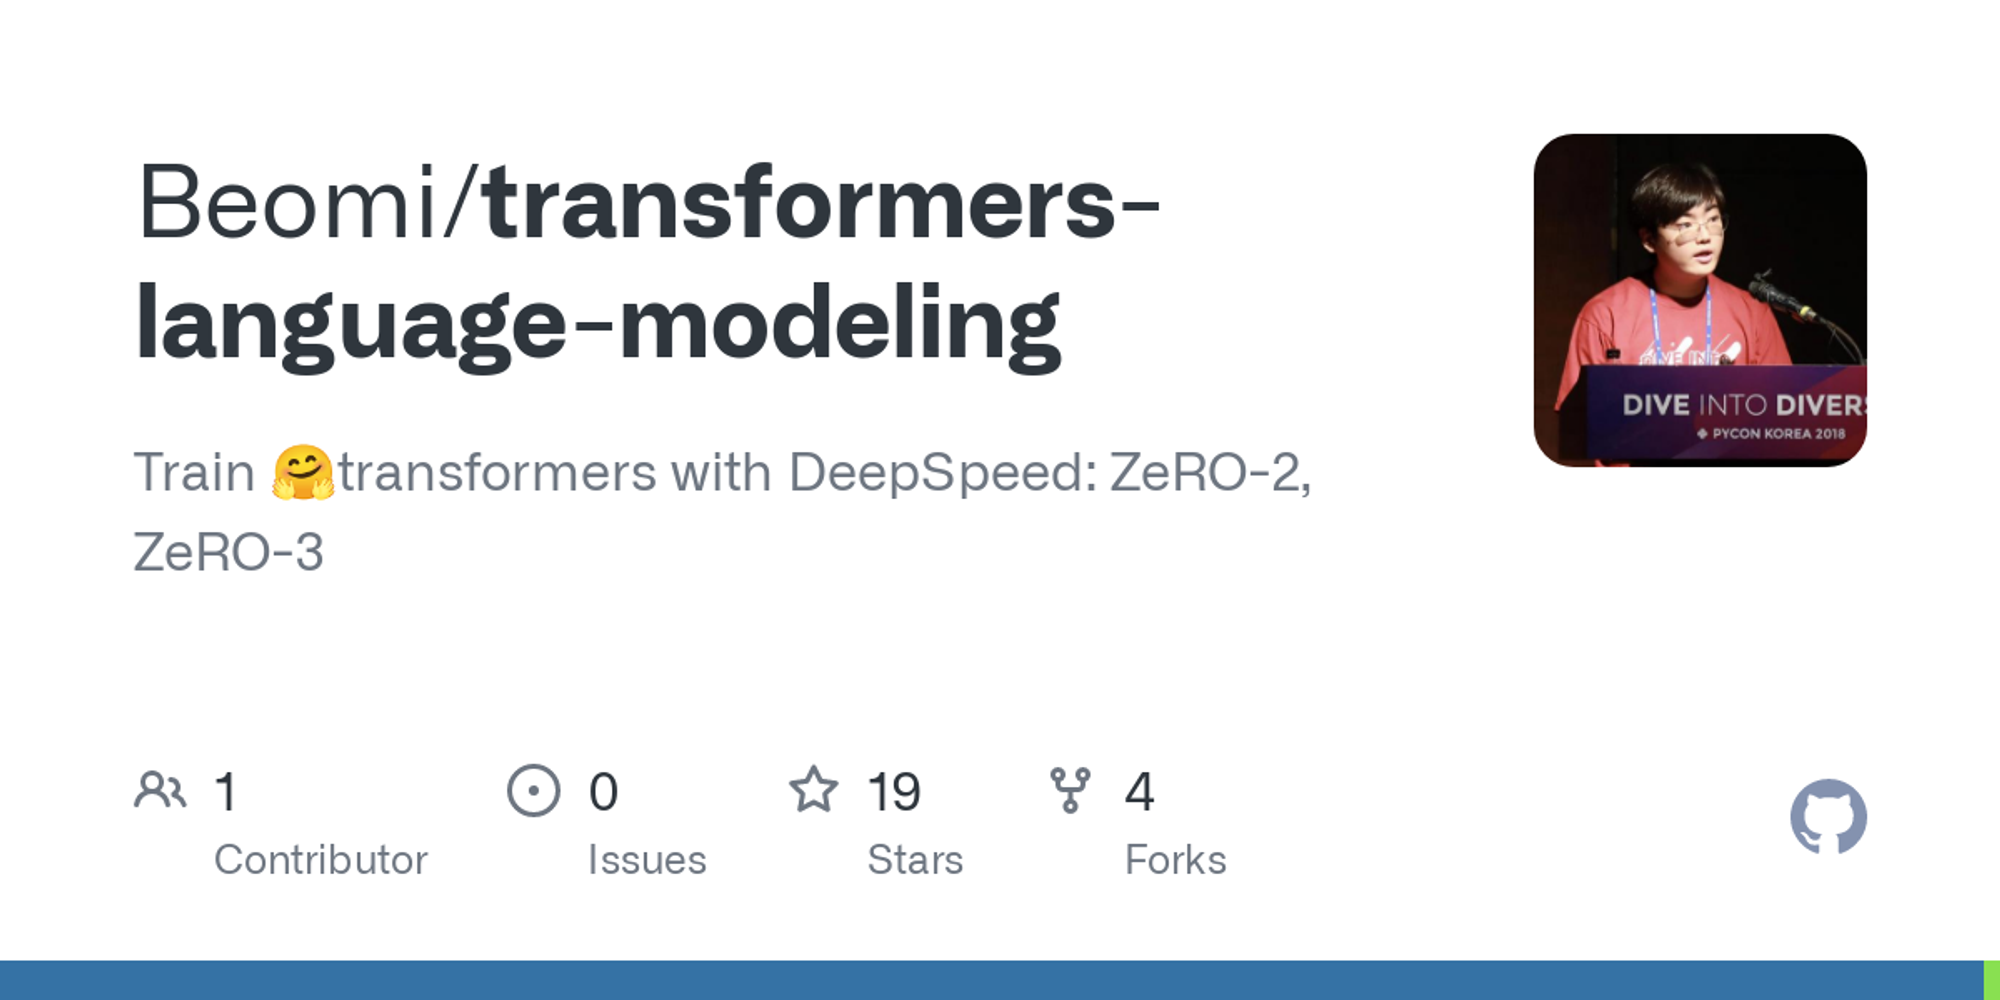 Beomi/transformers-language-modeling